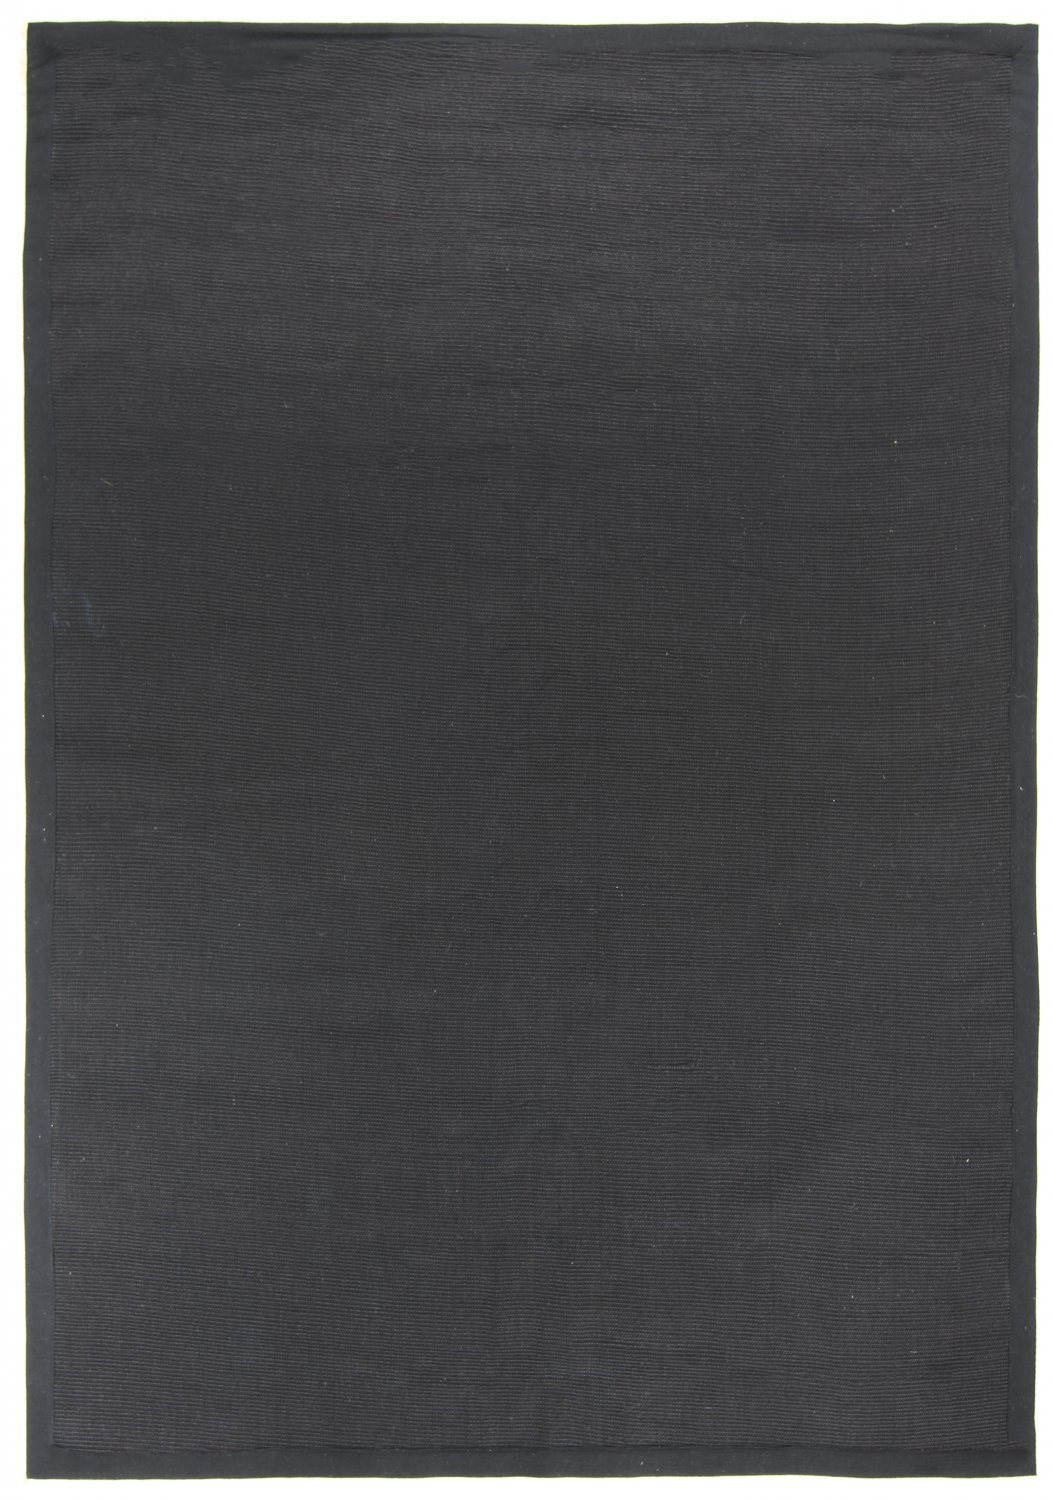 Sisal-vloerkleed - Agave (zwart)